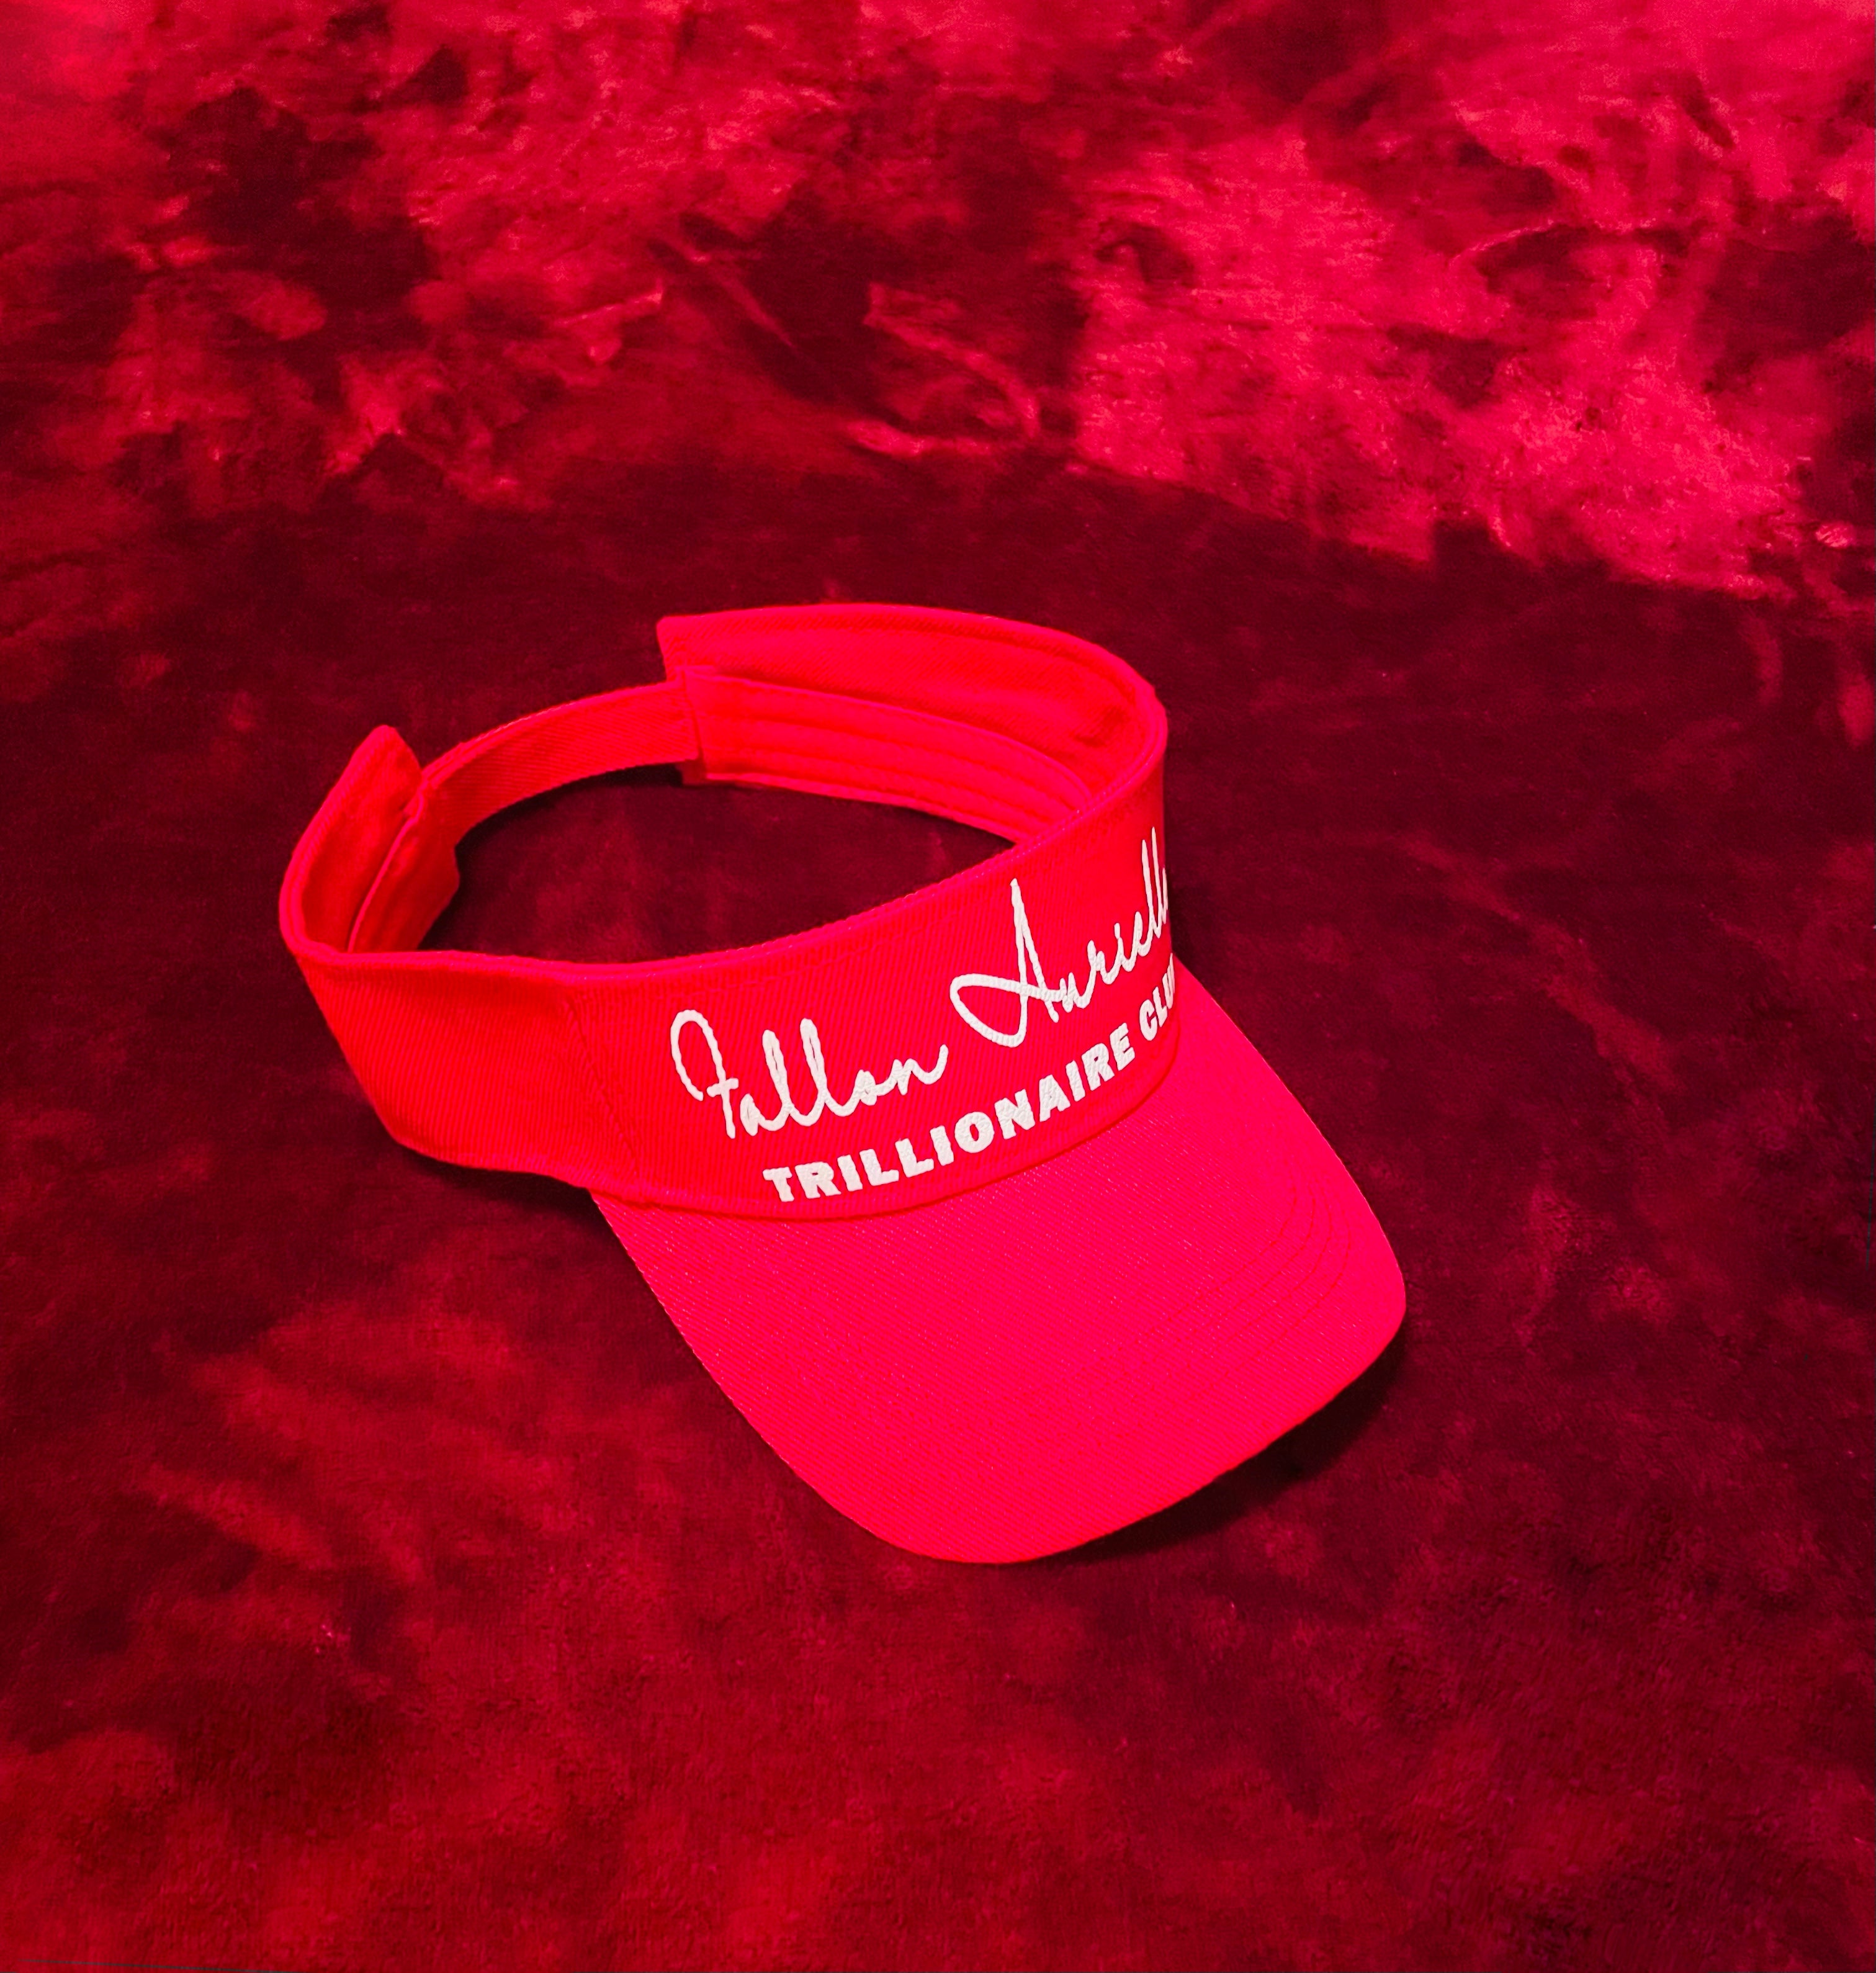 Fallon Aurielle Unisex Signature V-Neck 3 Piece Trillionaire Club Short Set (Red & White)